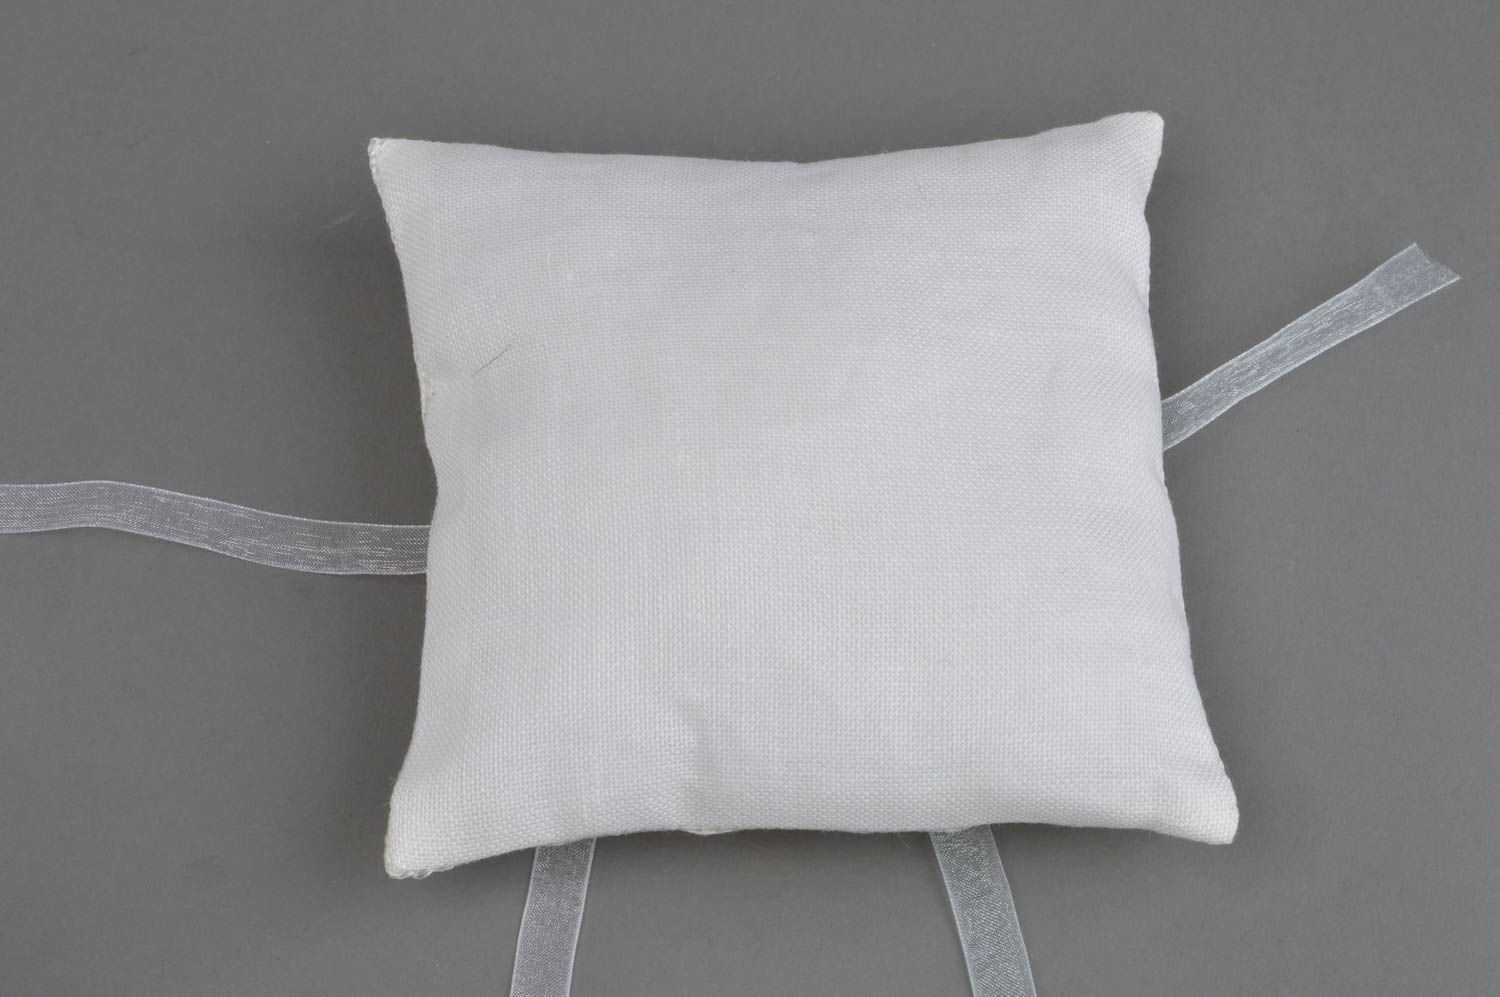 Авторская свадебная подушечка для колец ручной работы из льна с ленточками фото 3